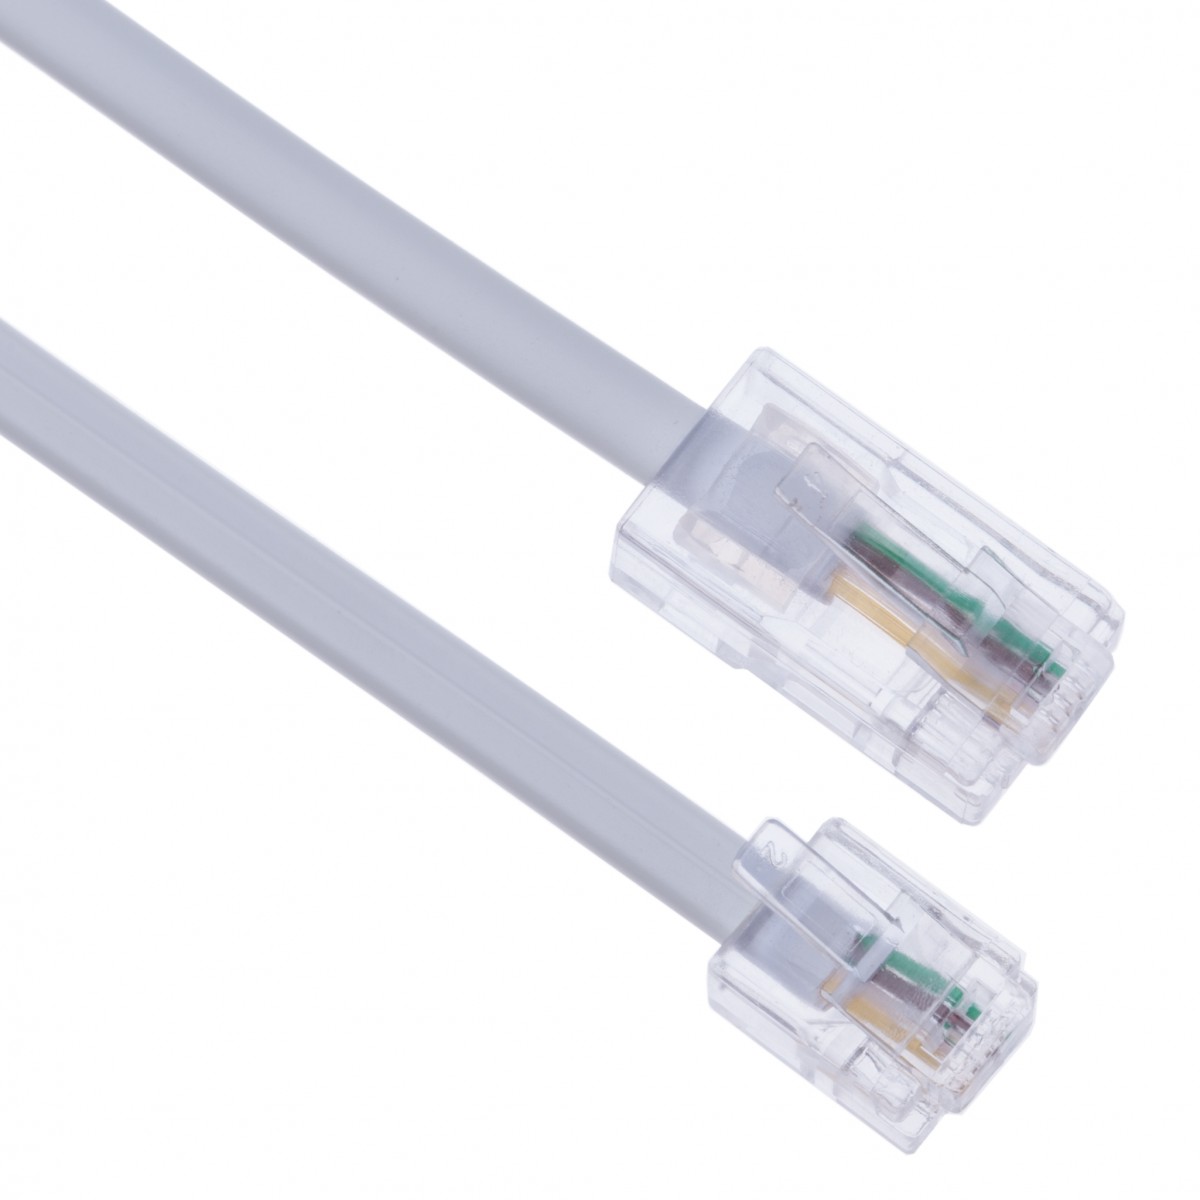 2M-30M RJ11 US pour RJ11 ADSL haut débit Ligne Téléphonique Internet câble UK 